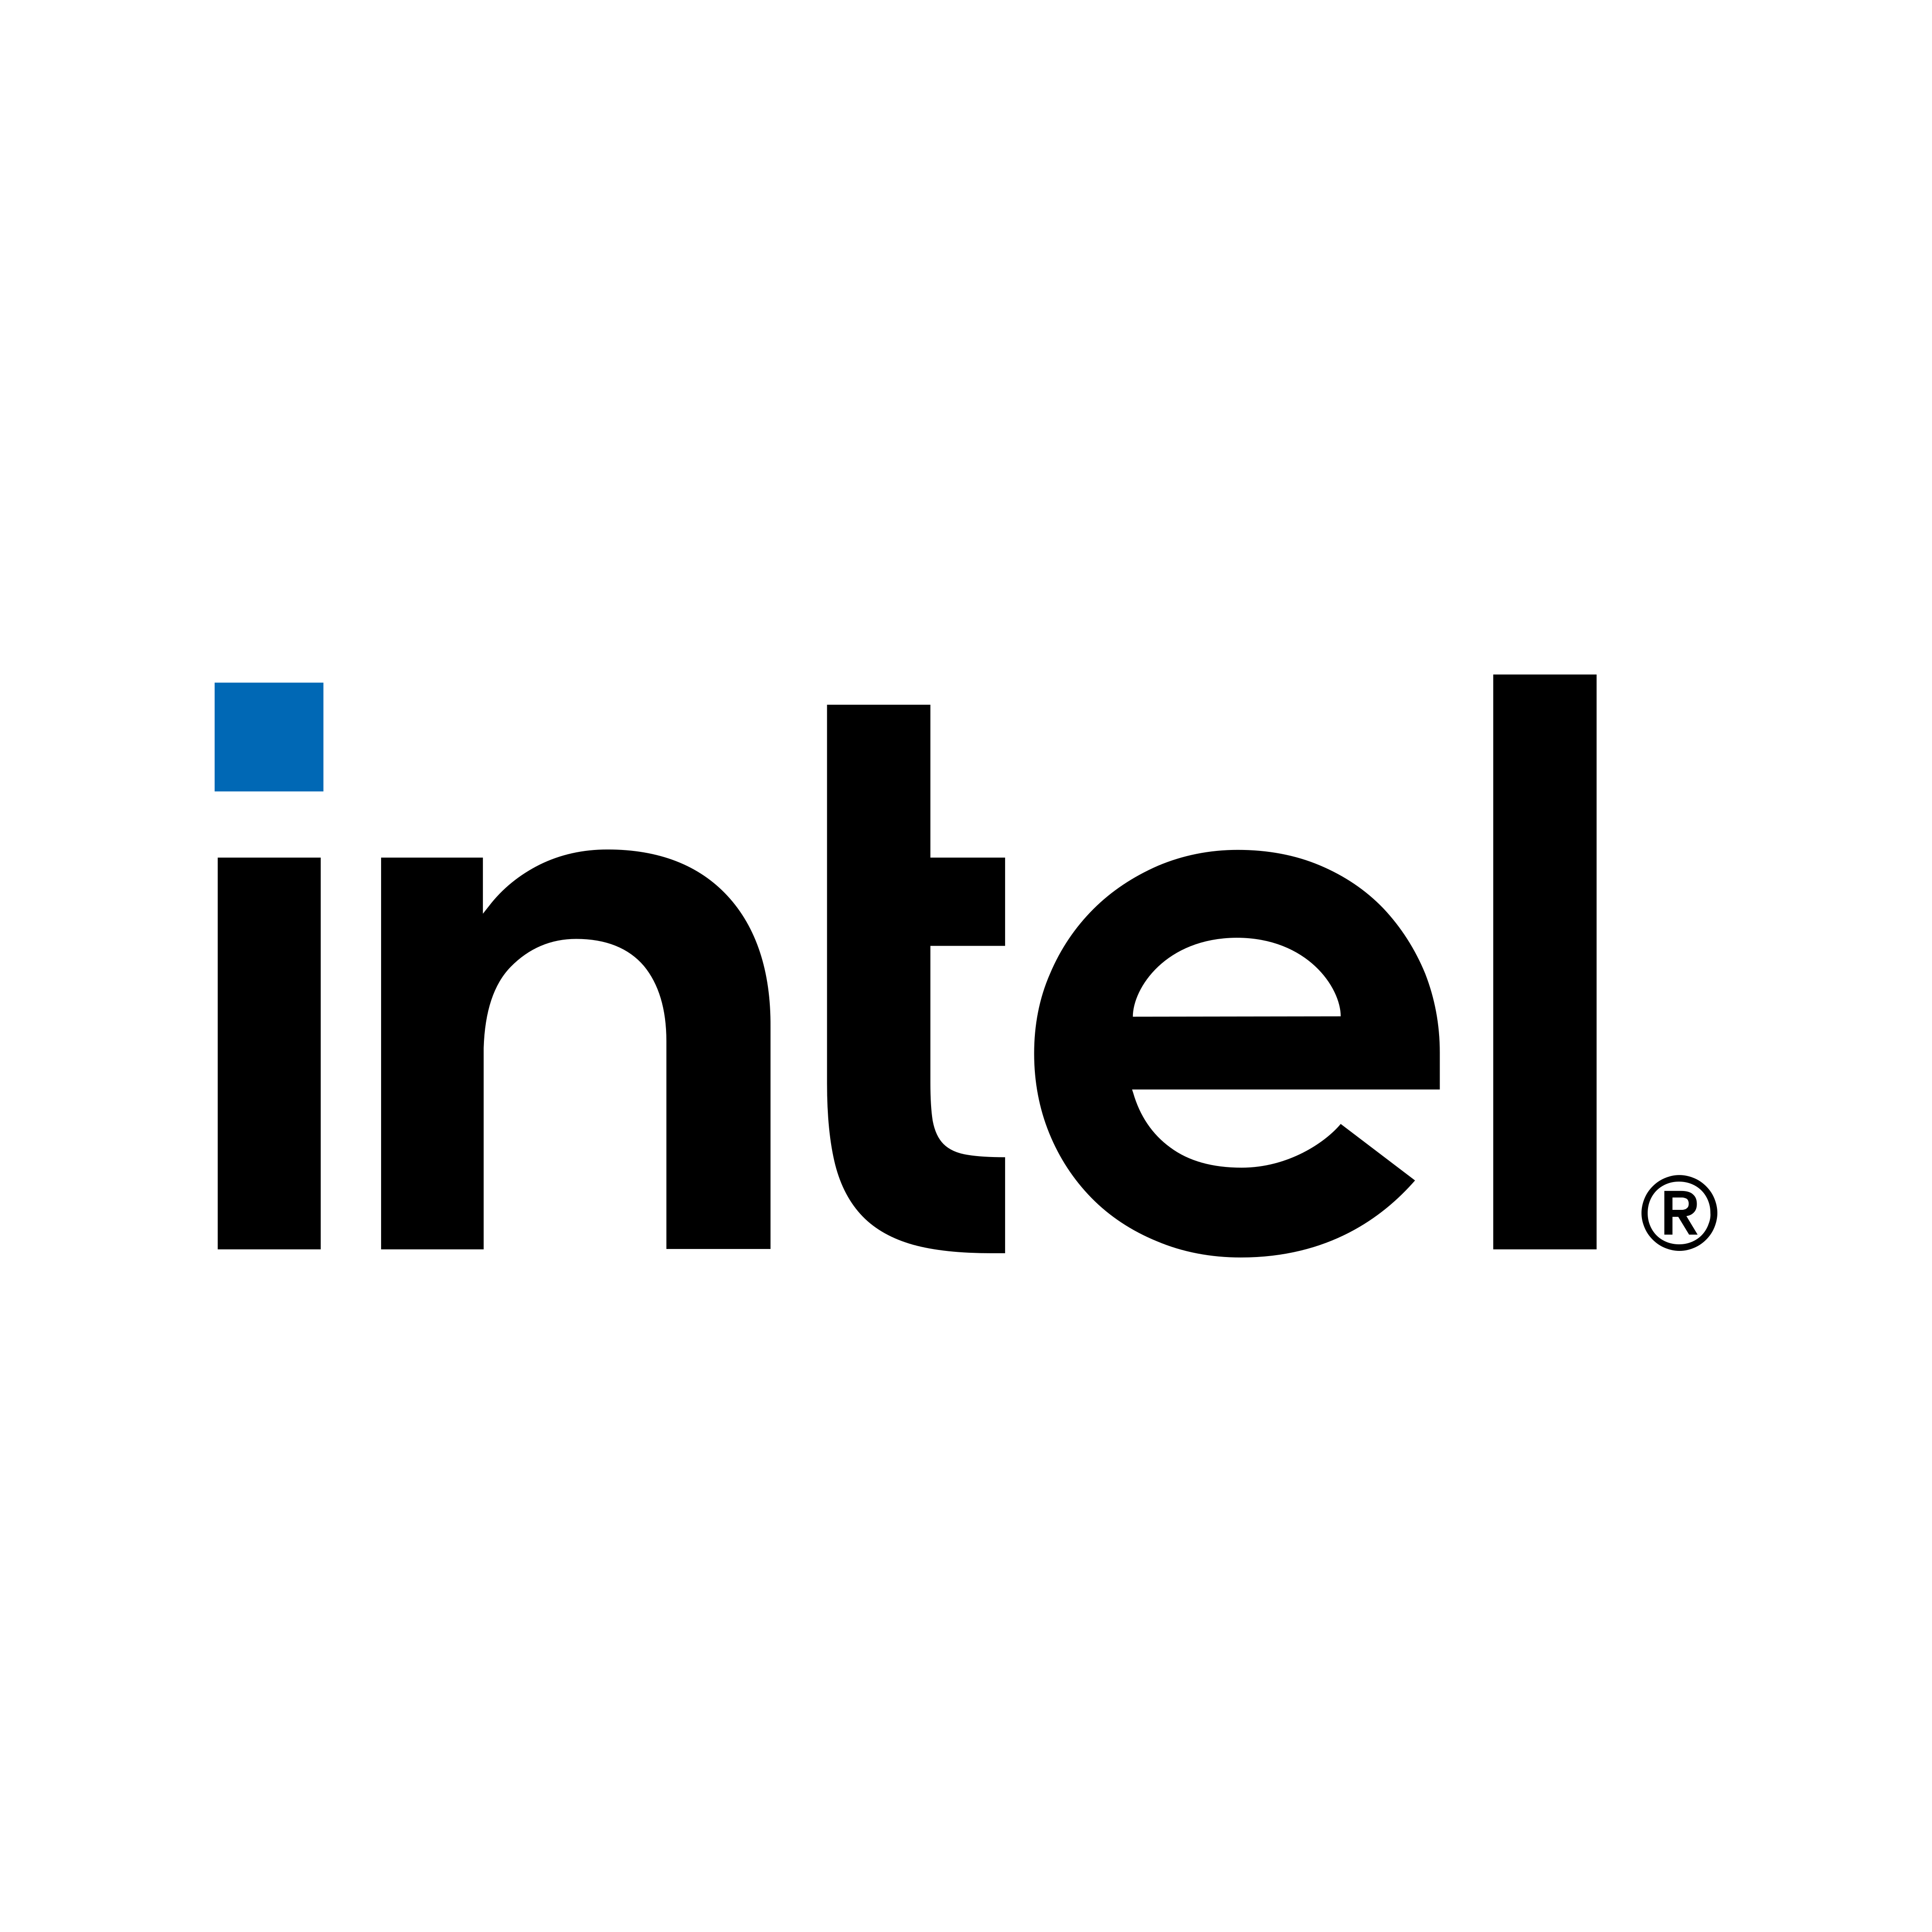 Intel Logo PNG File